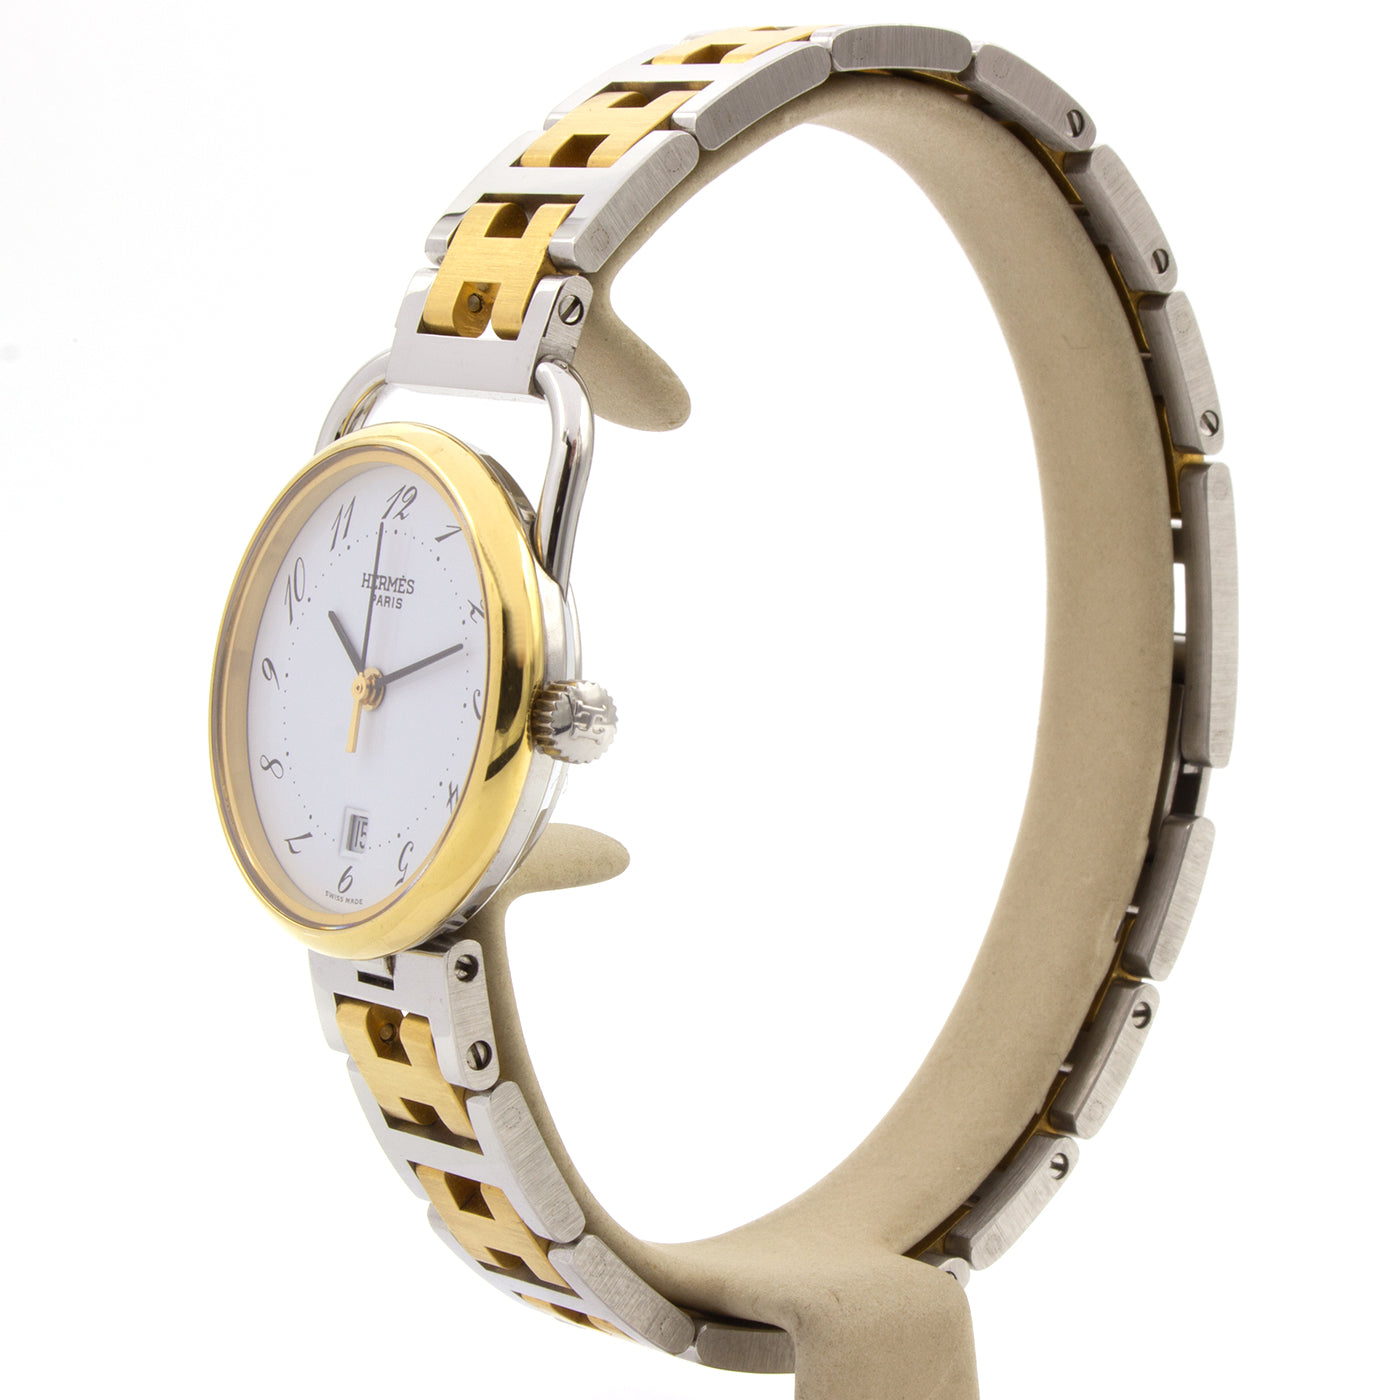 Hermes Arceau 25mm watch